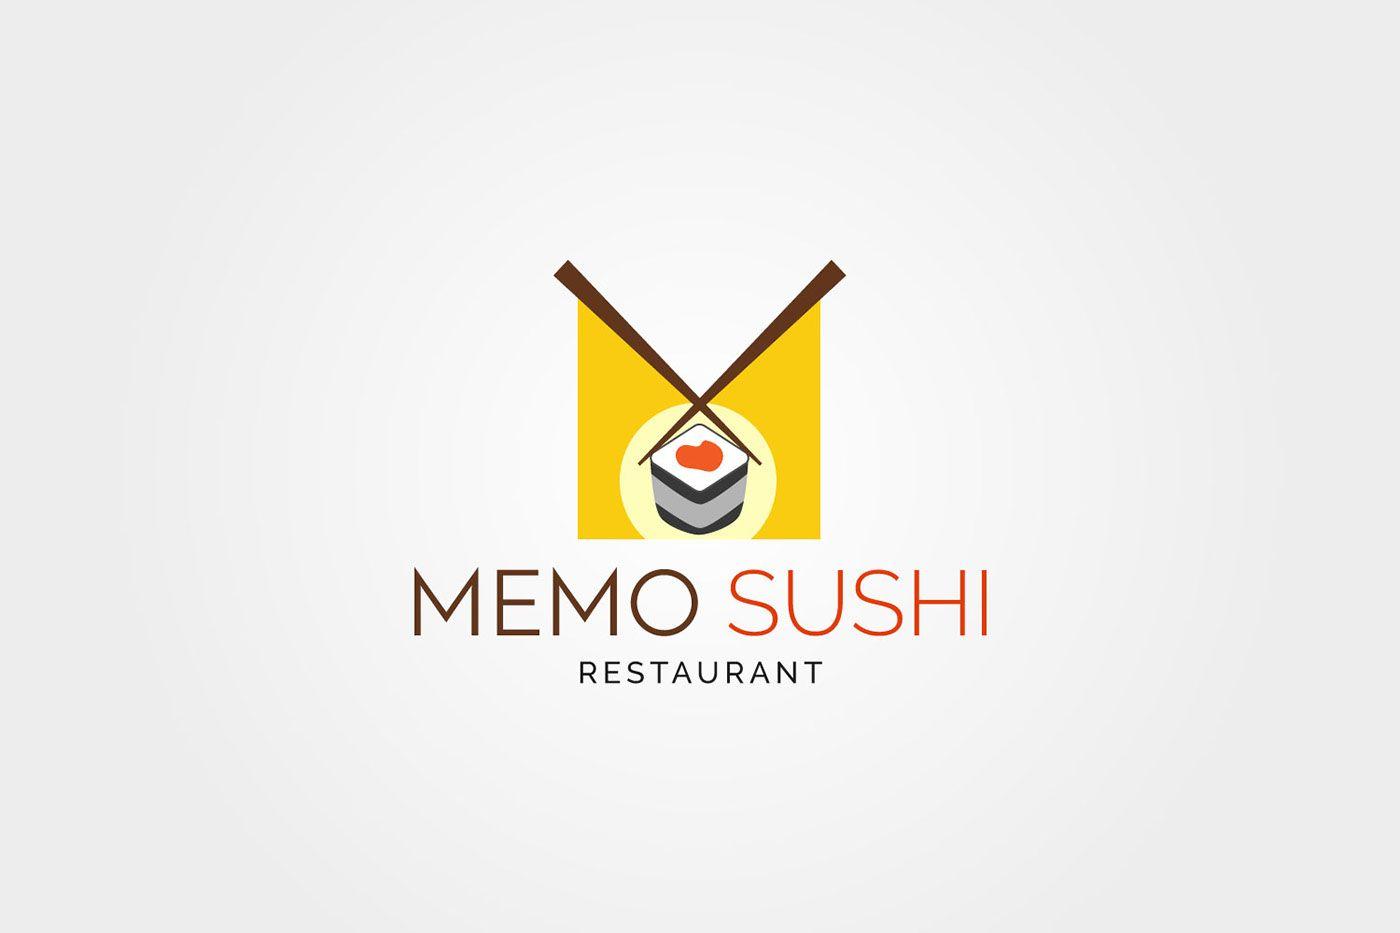 Cool Japanese Restaurant Logo - MEMO SUSHI Restaurant LOGO